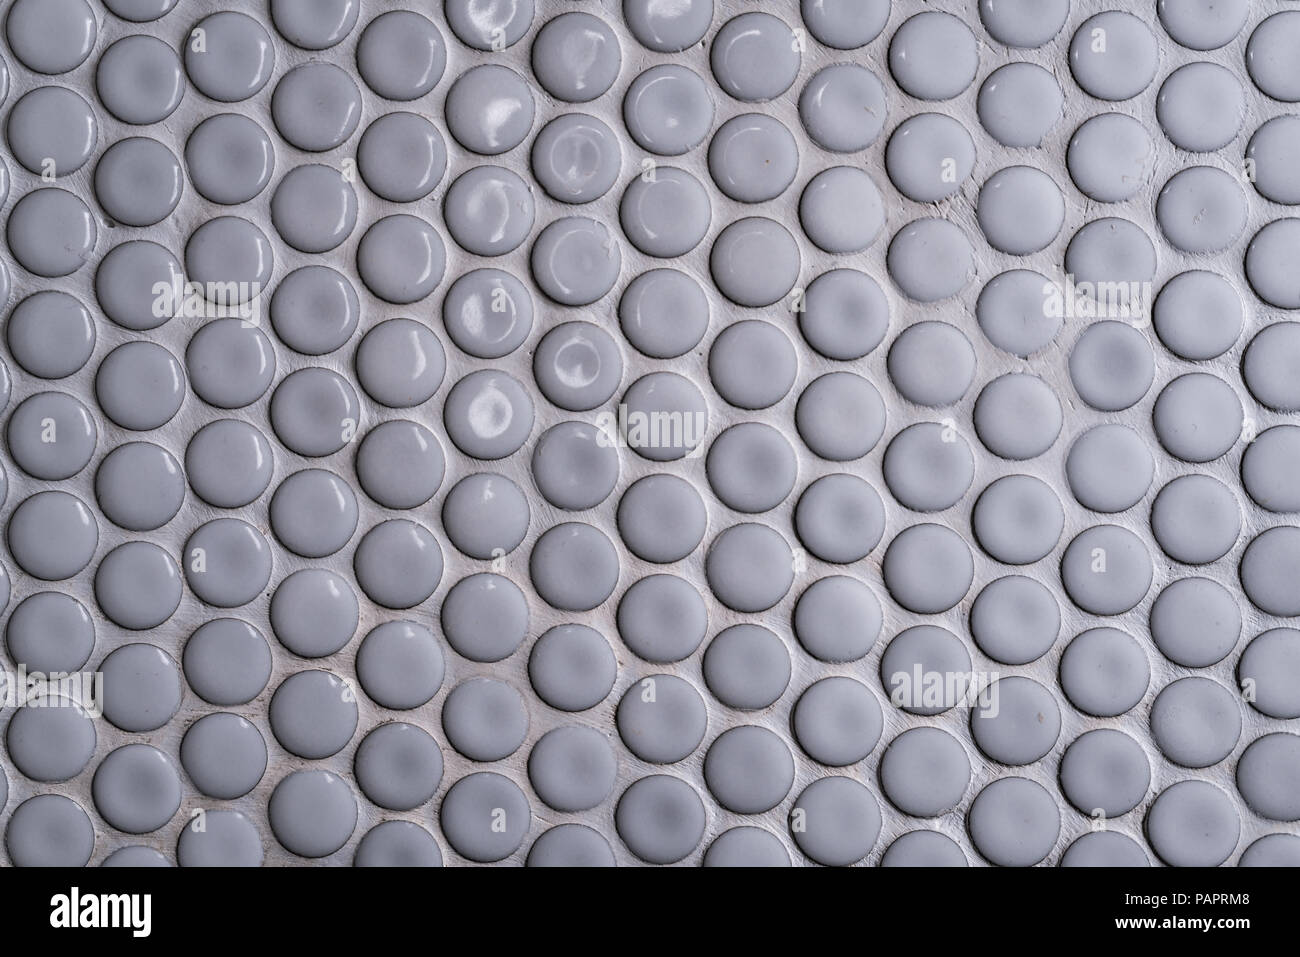 Weißer keramik Fliesen an der Wand mit vielen kleinen Runden einzigartigen Muster. Blick von oben auf die Badezimmer Wand Fliesen ist ein runder Knopf625. Kreis weiß Mosaik Fliese Abstract Stockfoto